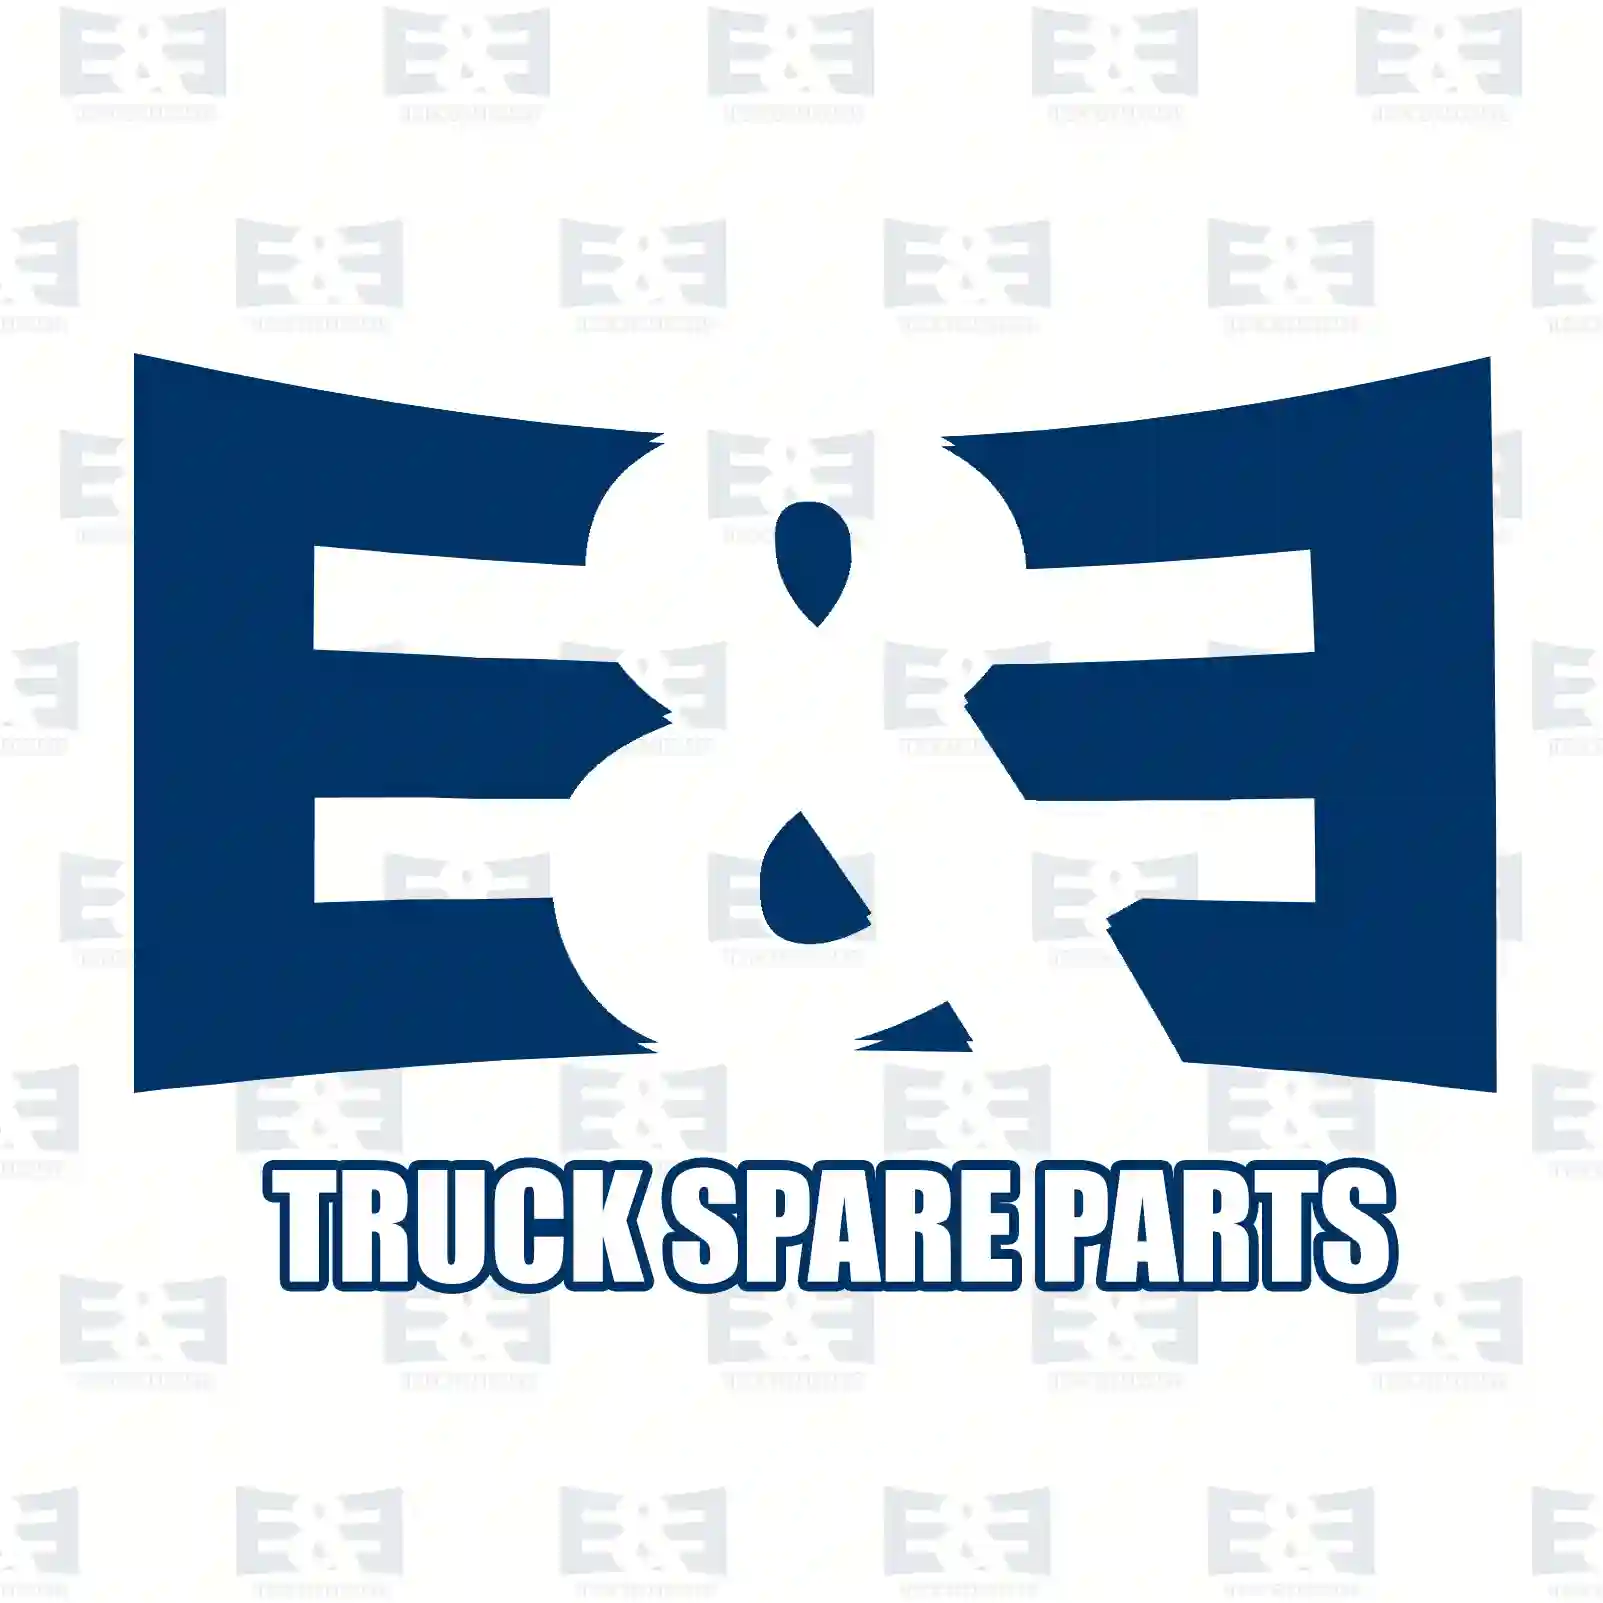 License plate lamp, 2E2299676, 6340A8, 1303499808, 6340A8 ||  2E2299676 E&E Truck Spare Parts | Truck Spare Parts, Auotomotive Spare Parts License plate lamp, 2E2299676, 6340A8, 1303499808, 6340A8 ||  2E2299676 E&E Truck Spare Parts | Truck Spare Parts, Auotomotive Spare Parts